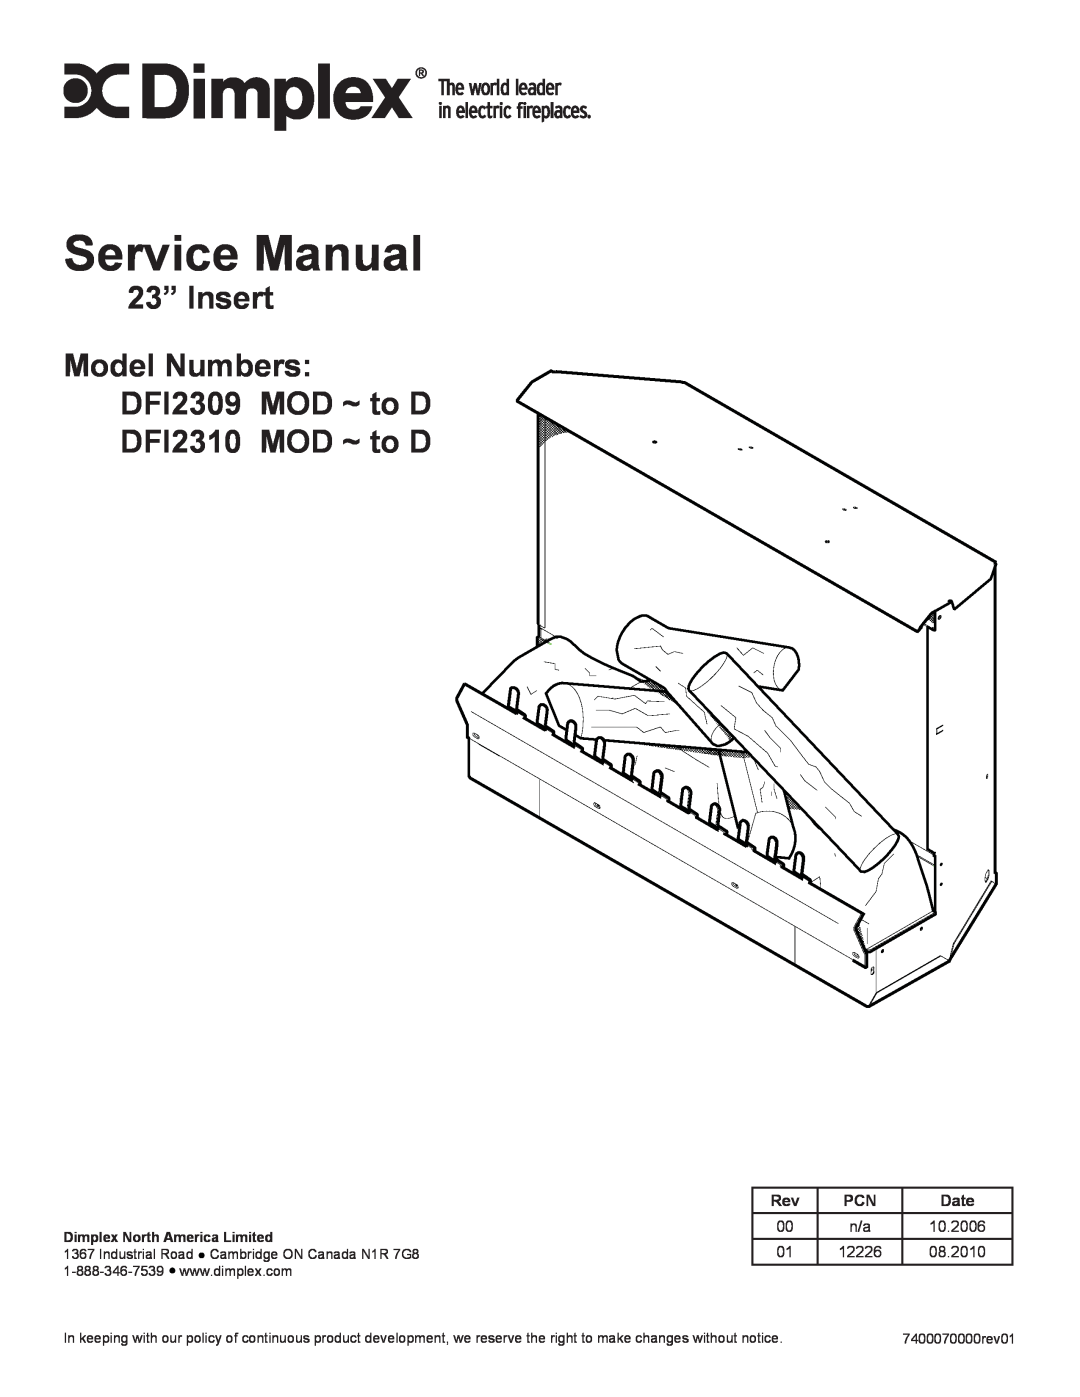 Dimplex Dimplex DFI2309 service manual 23” Insert Model Numbers DFI2309 MOD ~ to D, DFI2310 MOD ~ to D, Date, 10.2006 